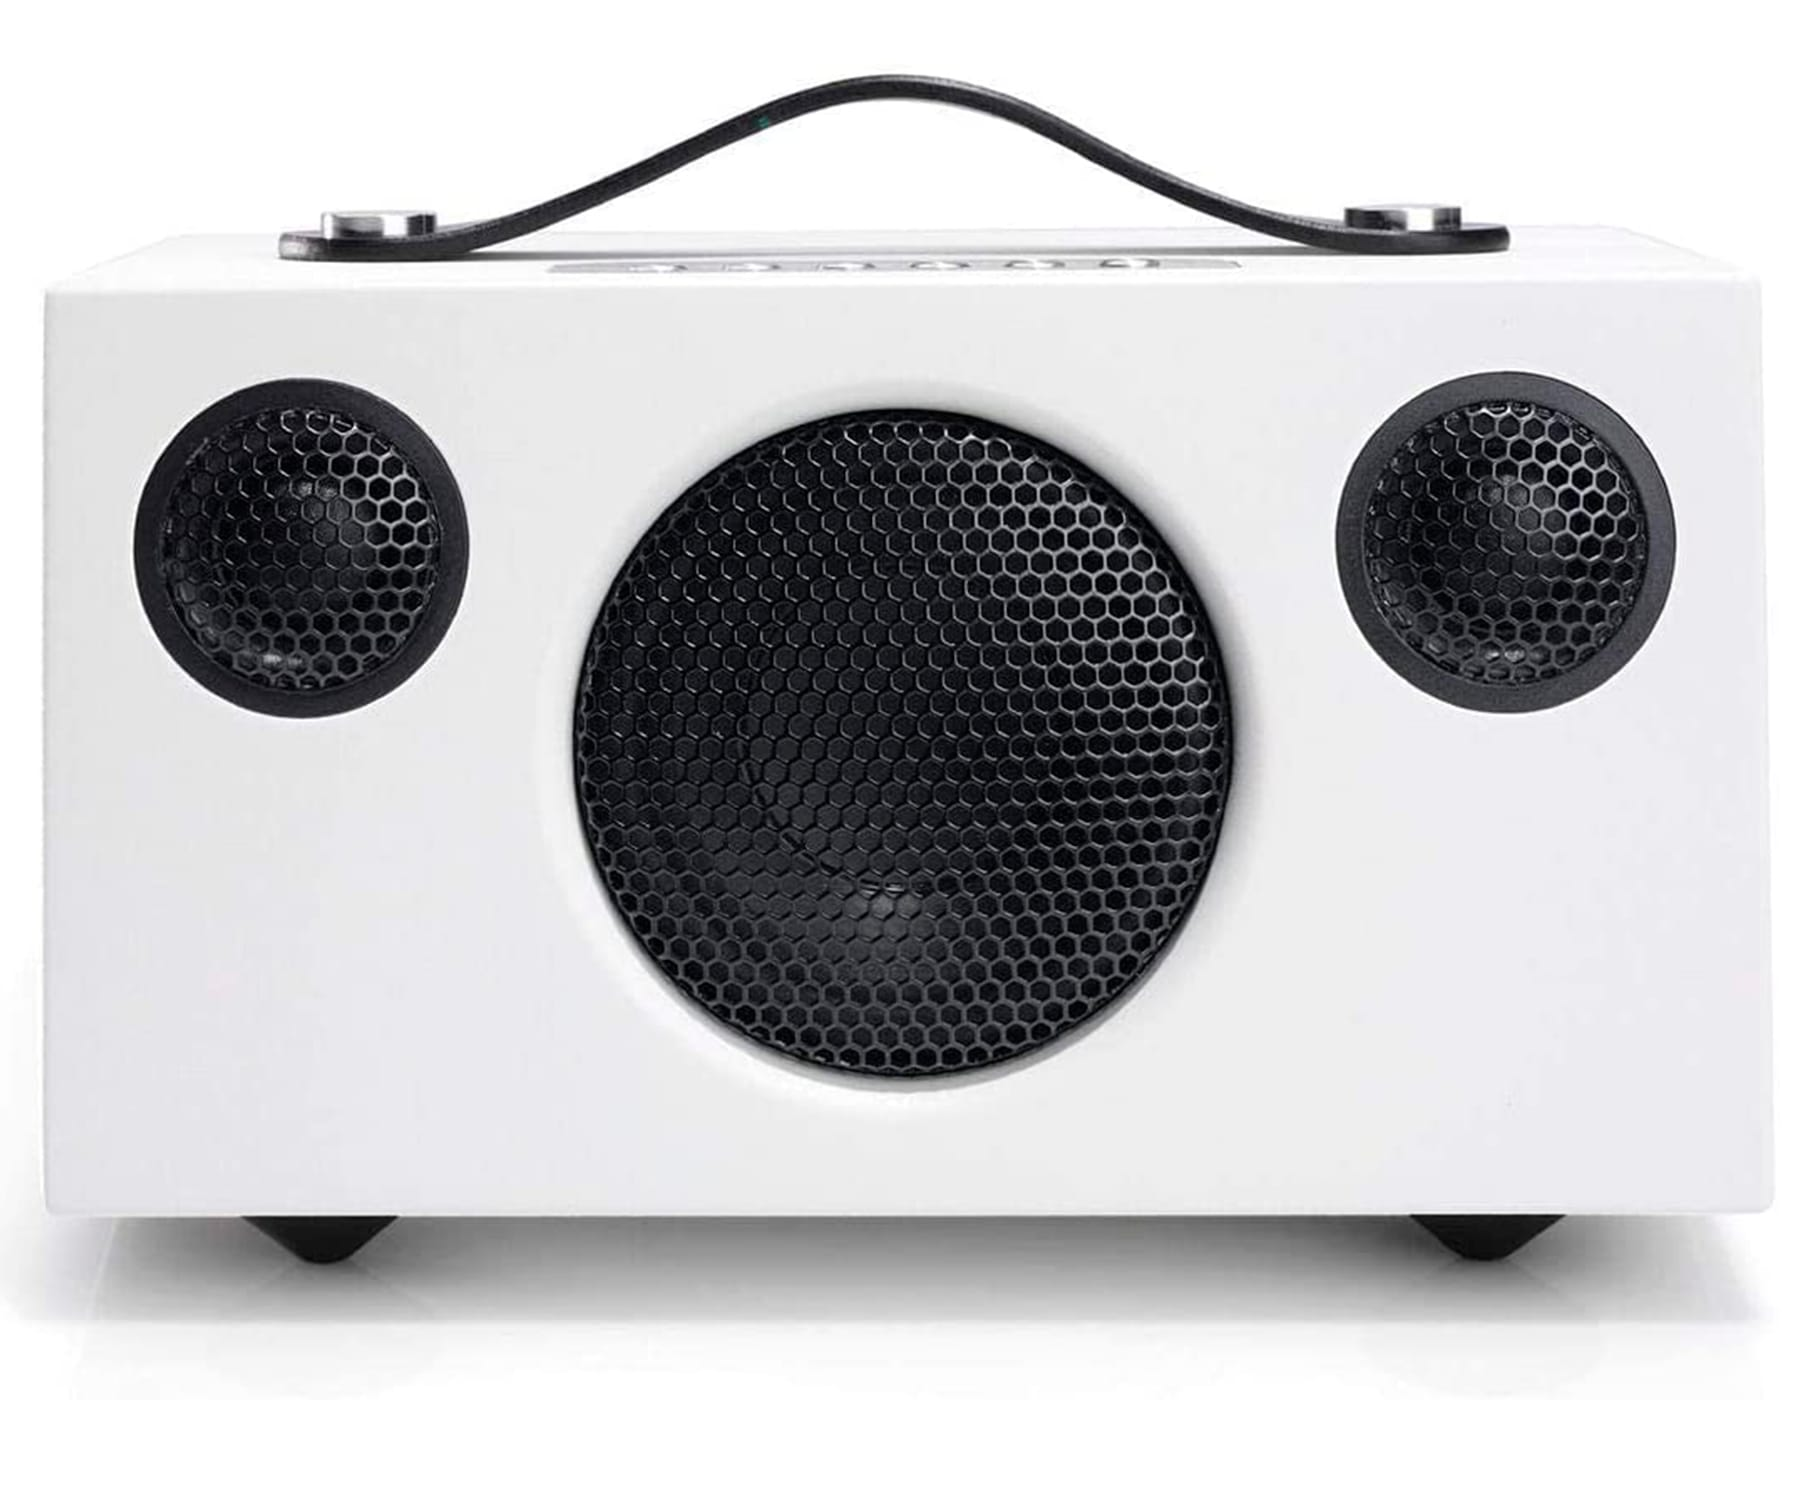 Altavoz Portátil Audio pro t3+ blanco bluetooth multiroom potente pequeño speaker aux 35mm carga usb sonido apple lossless mp3 y flac batería hasta 30h addon